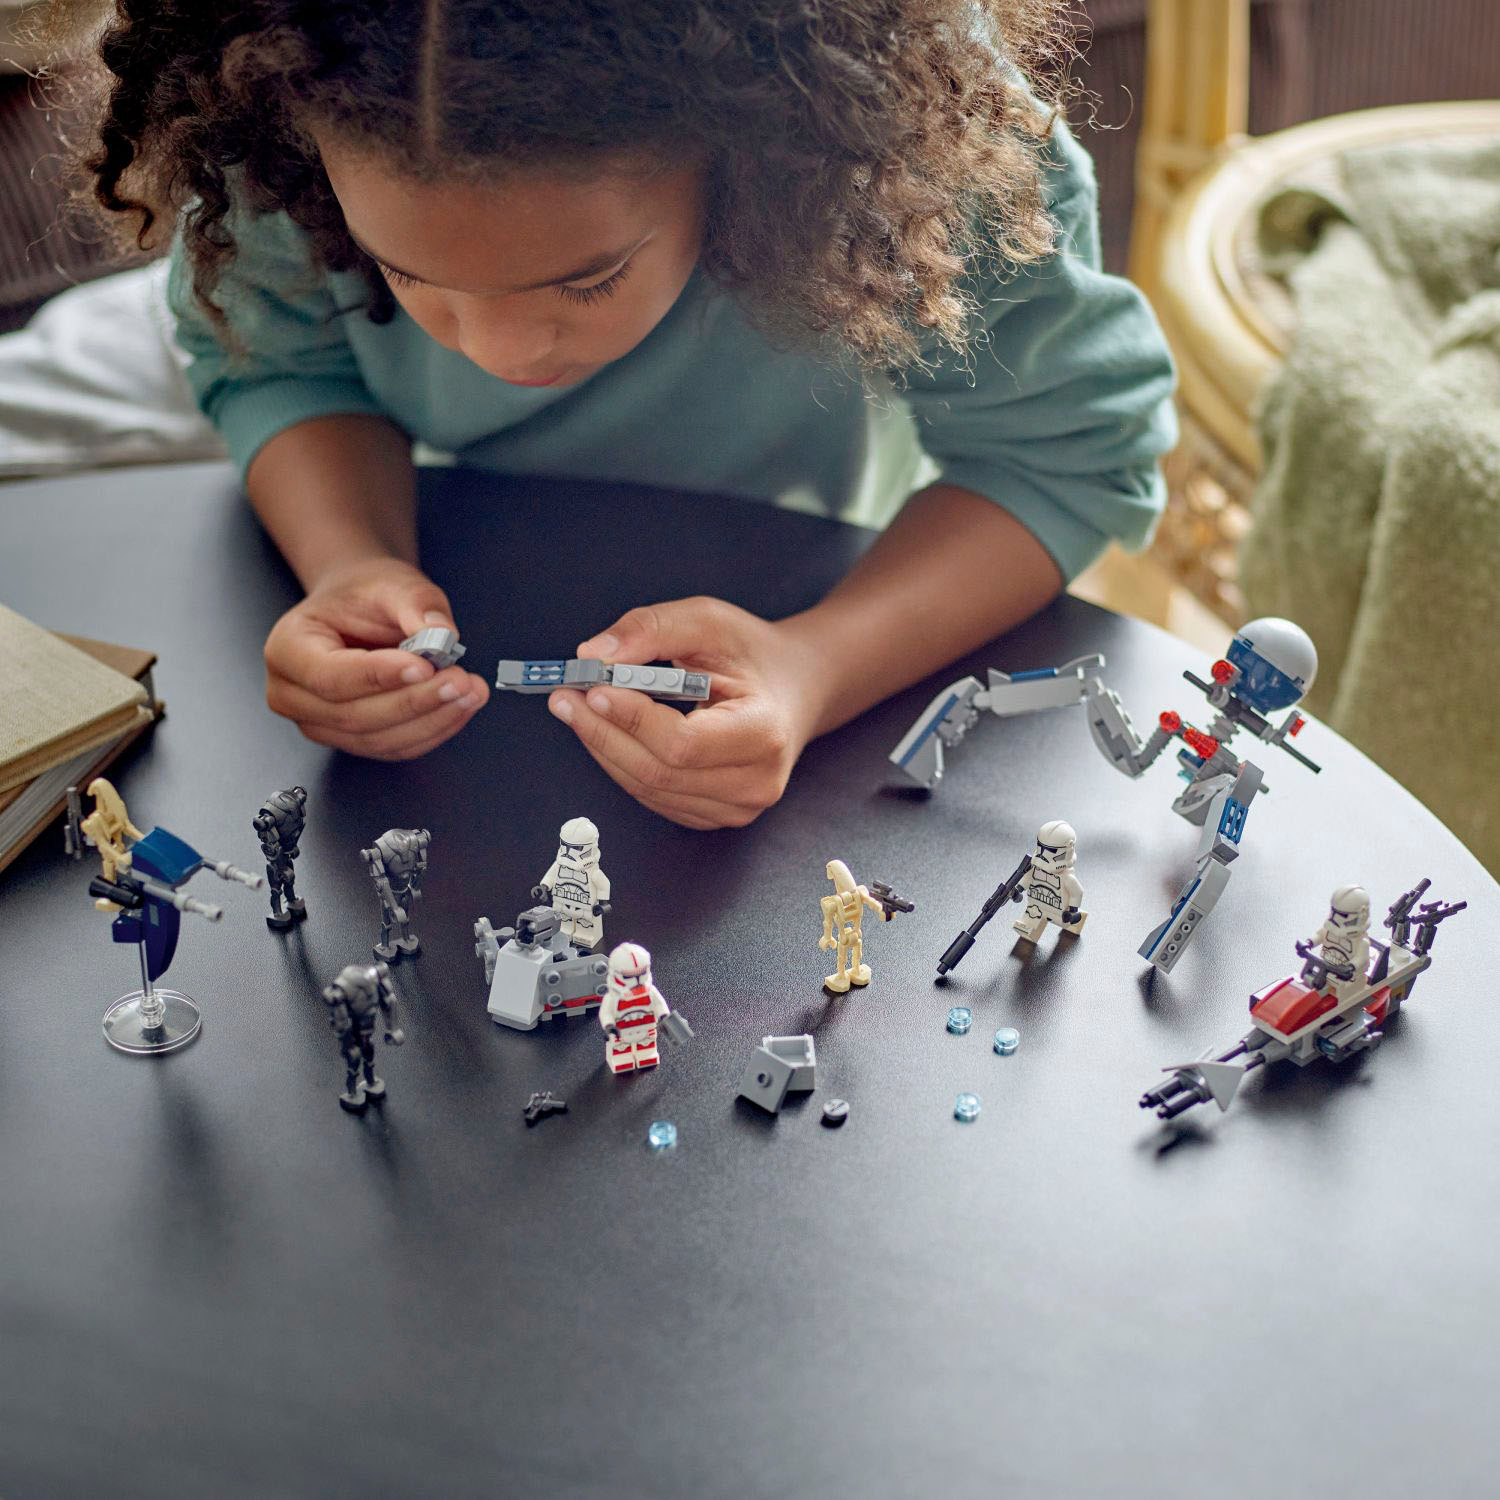 LEGO 75372 Star Wars Clone Trooper & Battle Droid Battle Set